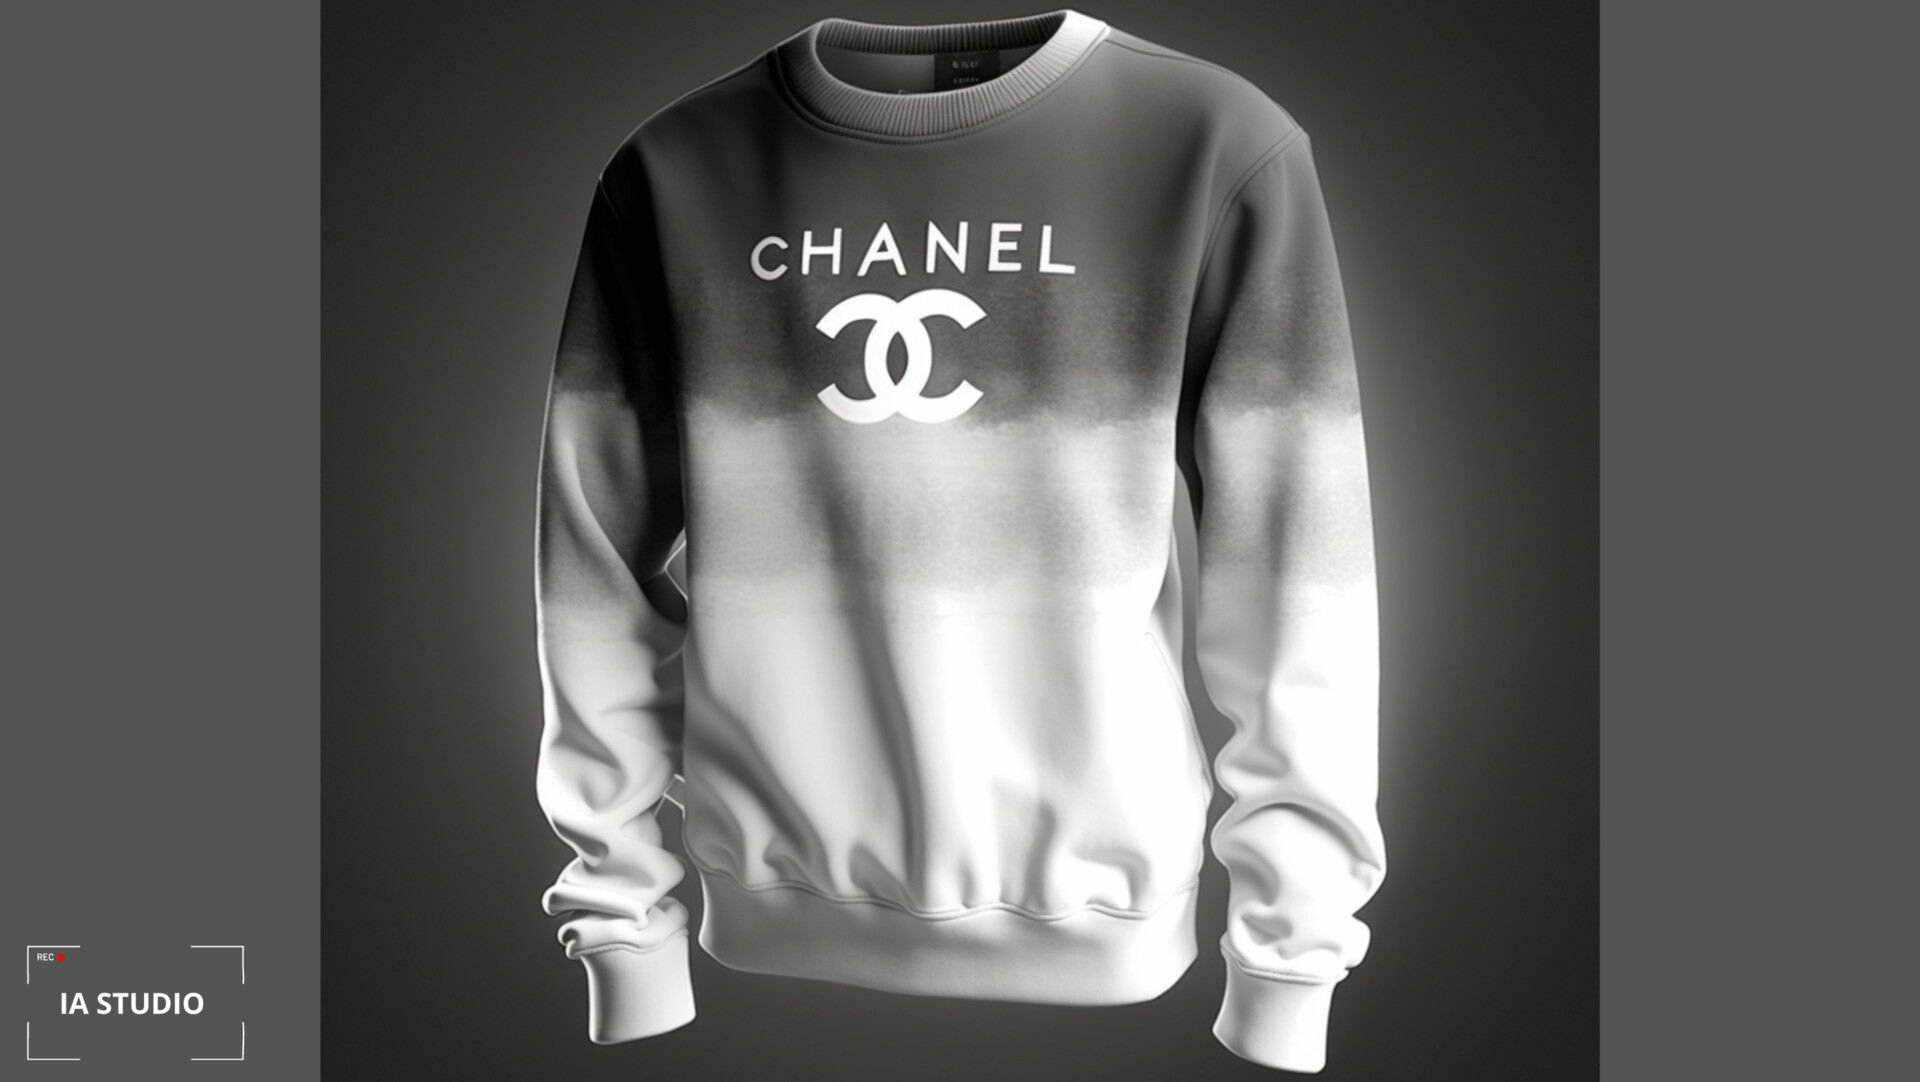 ArtStation - Chanel Edition sweatshirt by IA Studio and S7